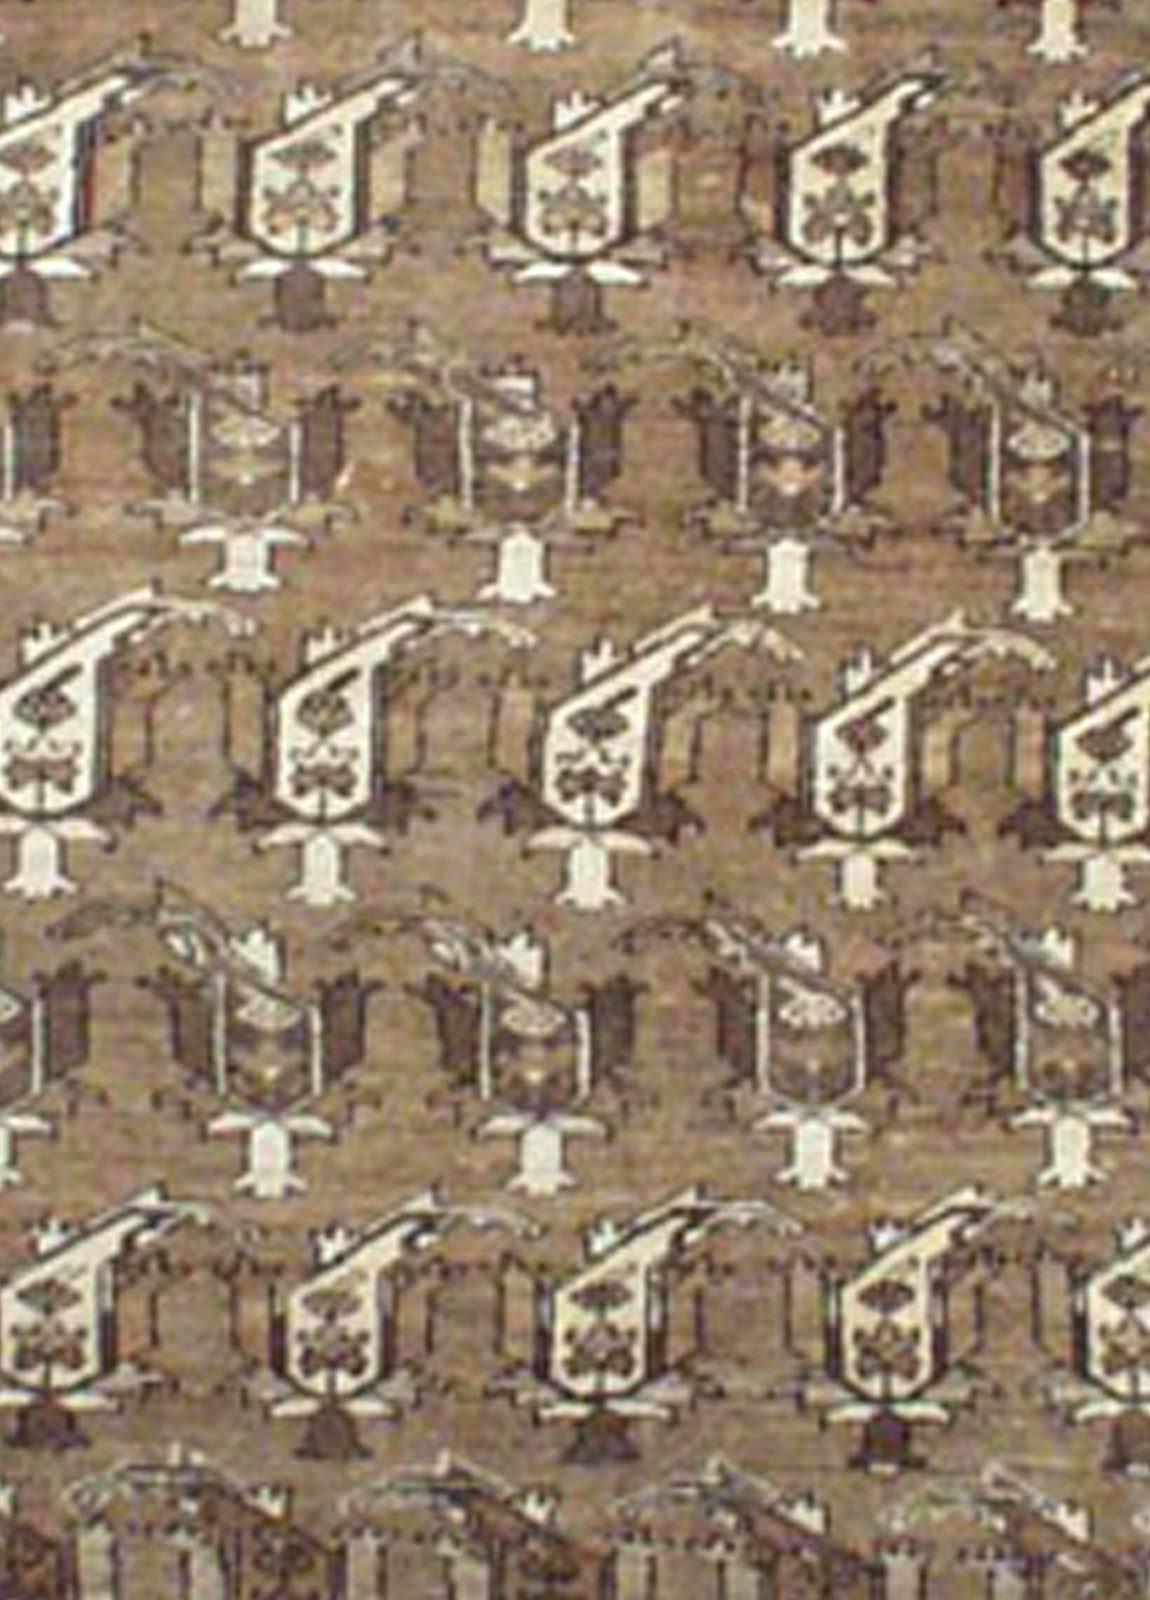 Antique Persian Heriz brown handmade wool rug by Doris Leslie Blau
Size: 9'6